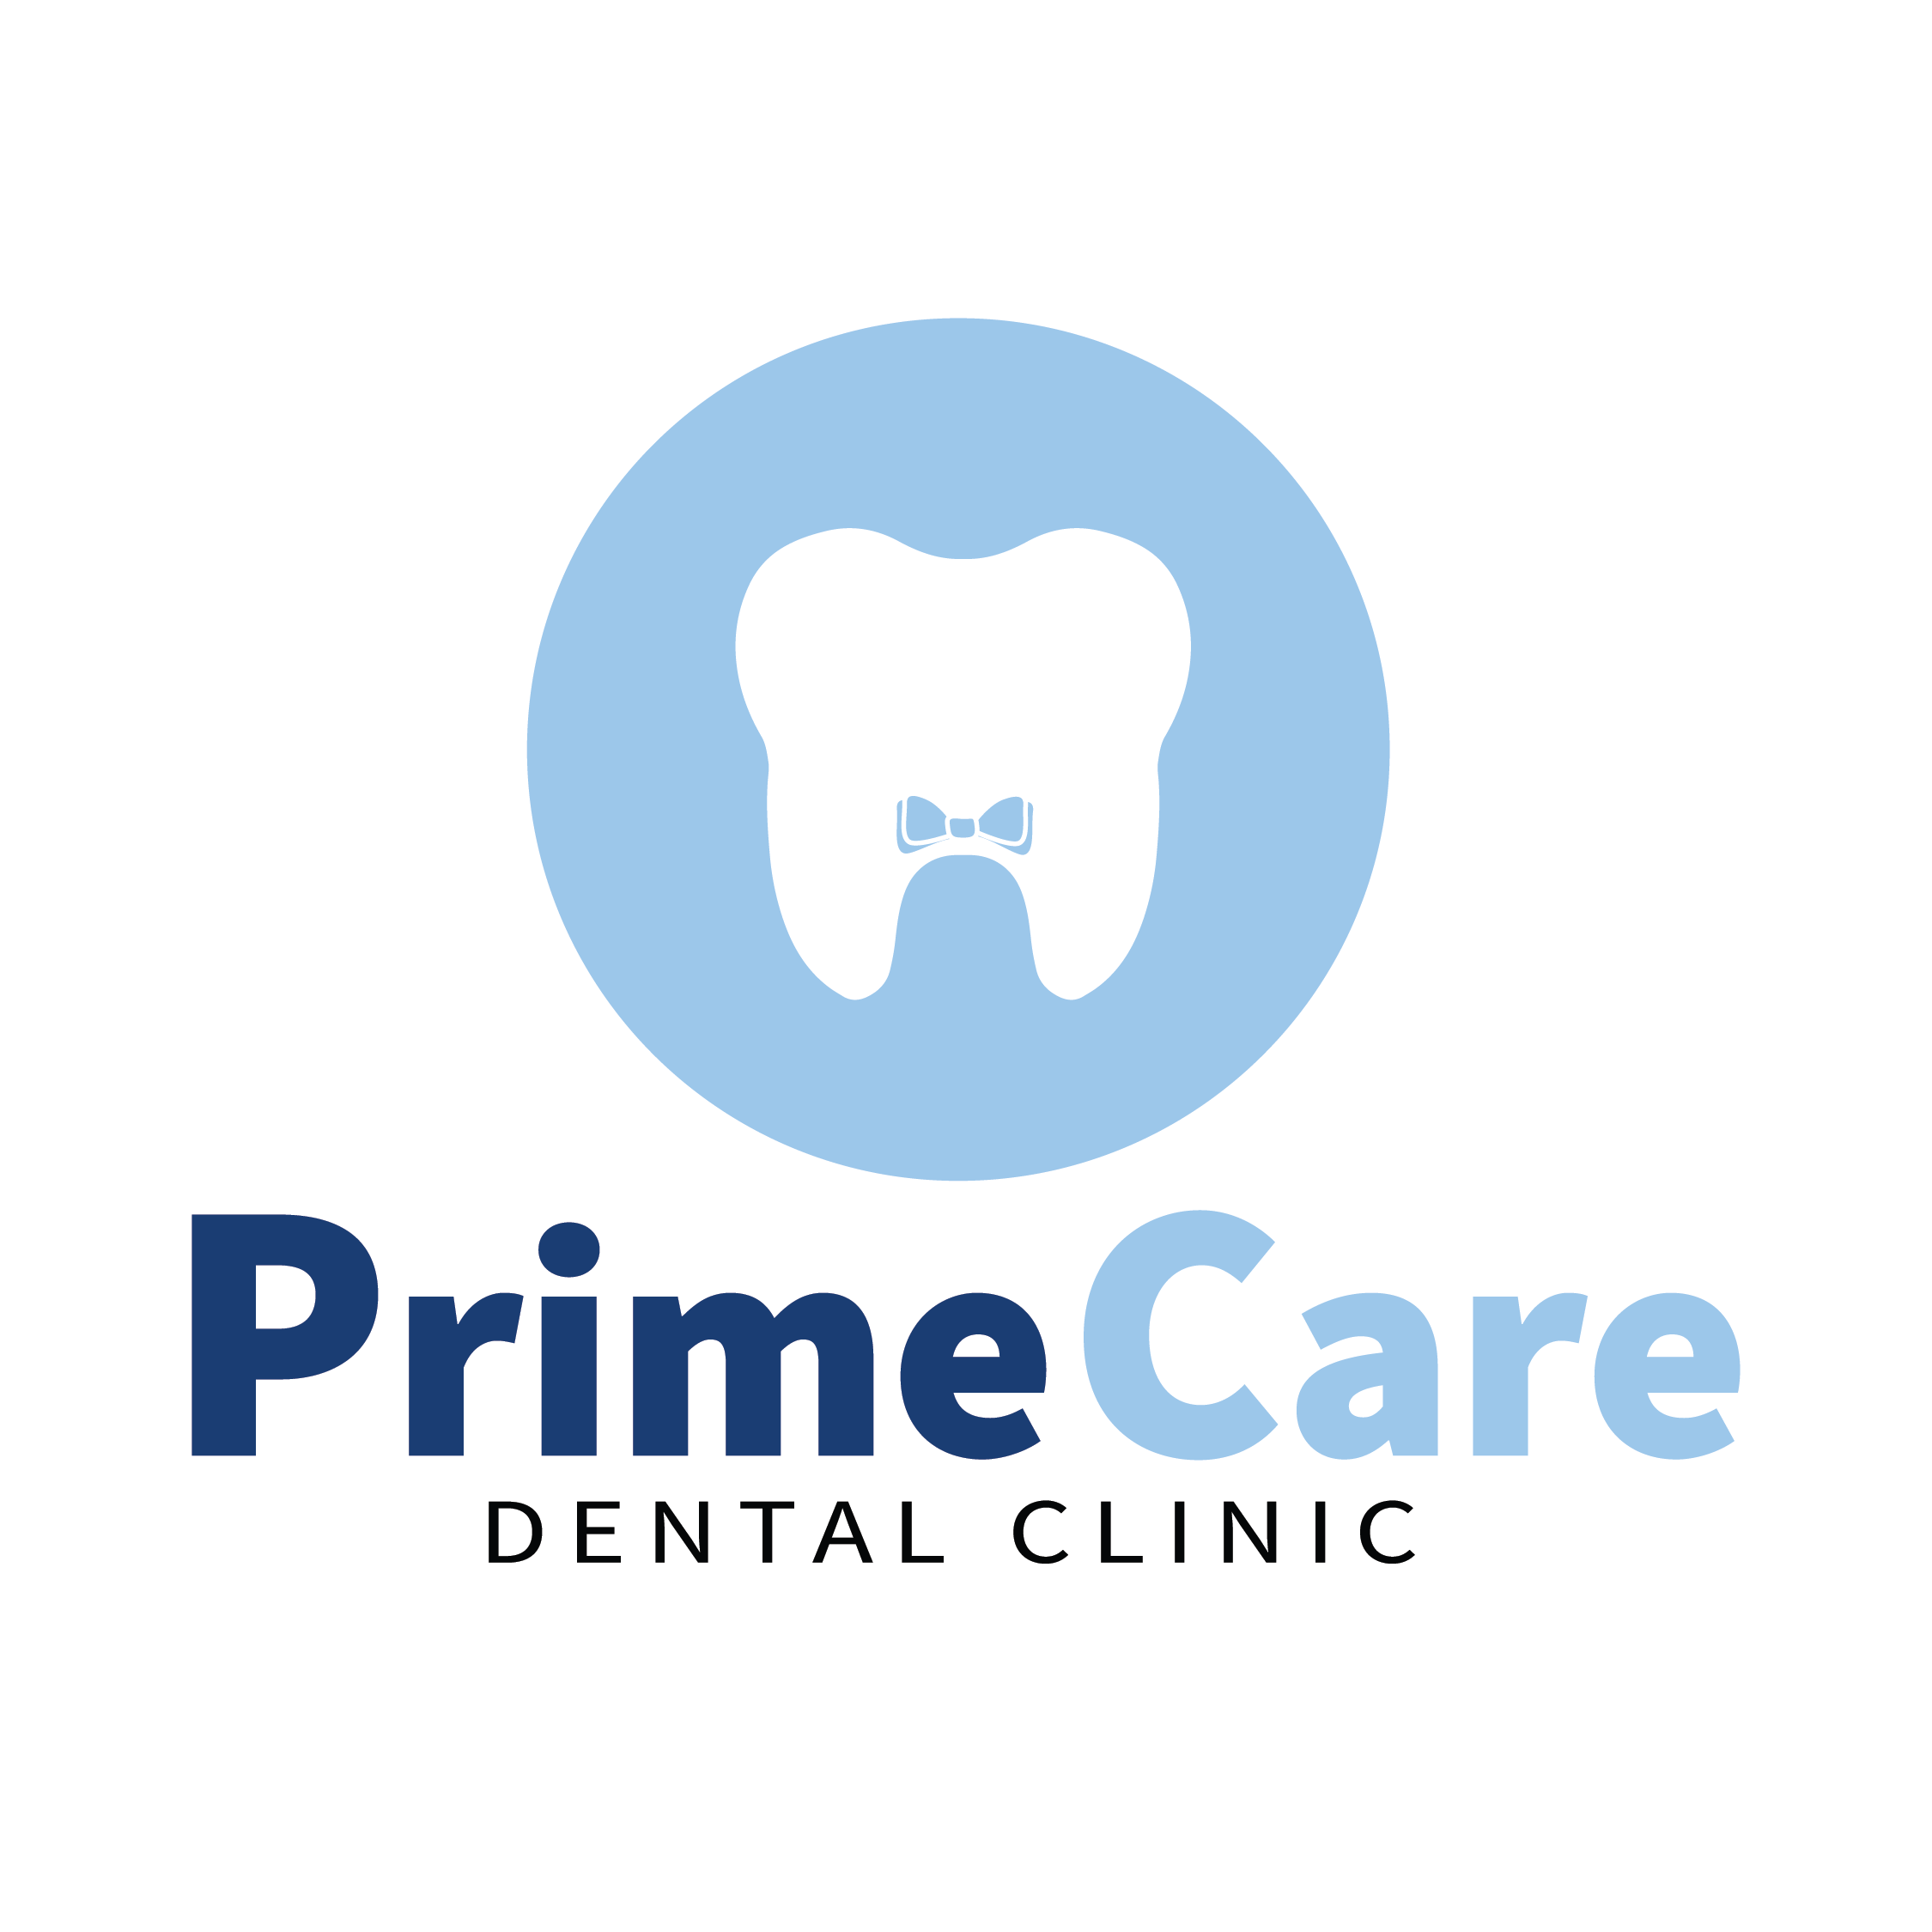 PrimeCare Dental Clinic, dental career opportunity